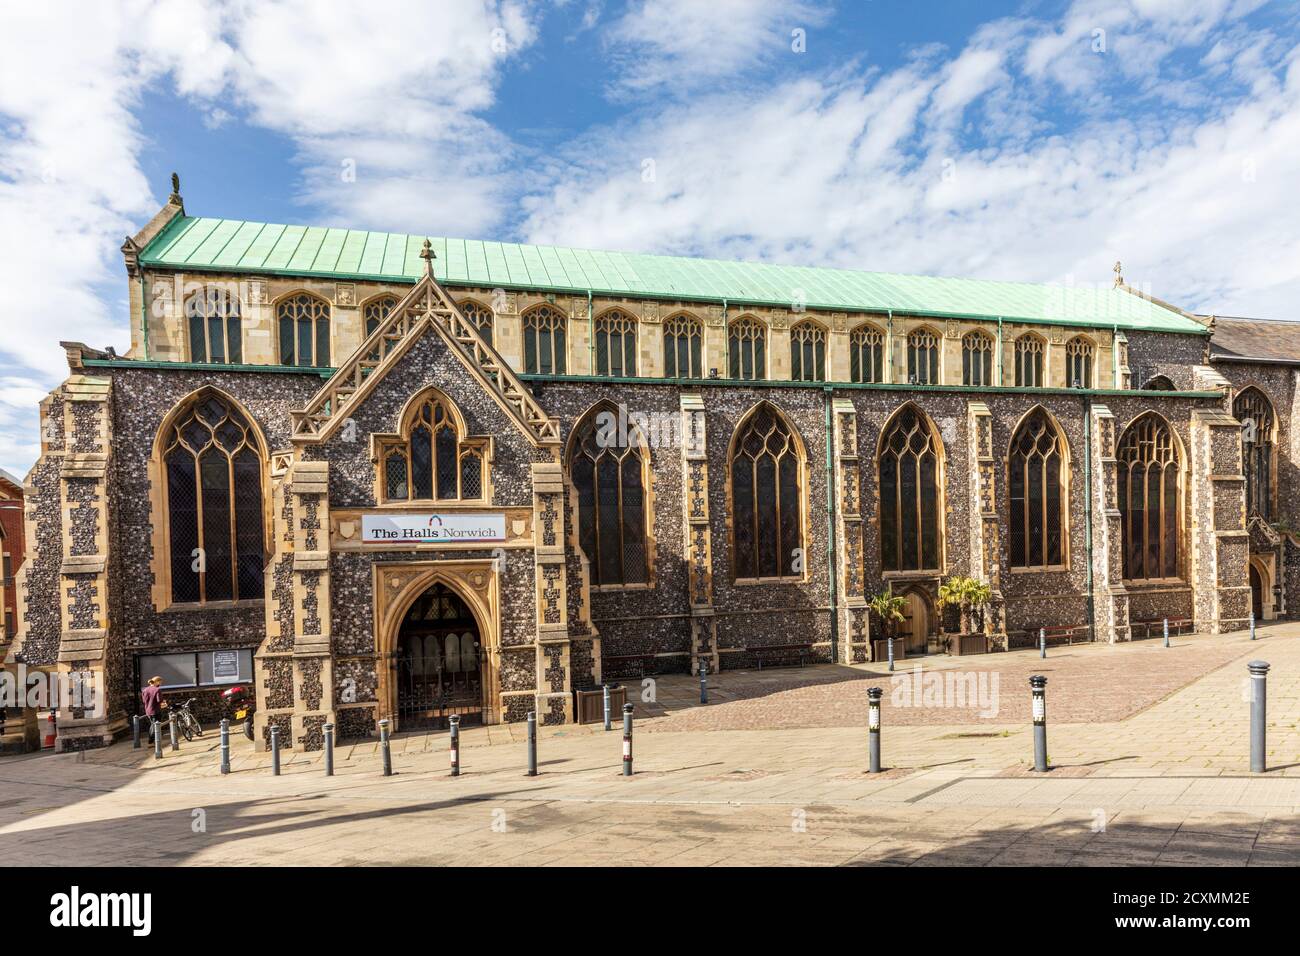 Die Hallen im Stadtzentrum von Norwich, Norfolk. Ein kompletter mittelalterlicher Klosterkomplex aus dem 14. Jahrhundert, der heute als Veranstaltungsort genutzt wird. Stockfoto